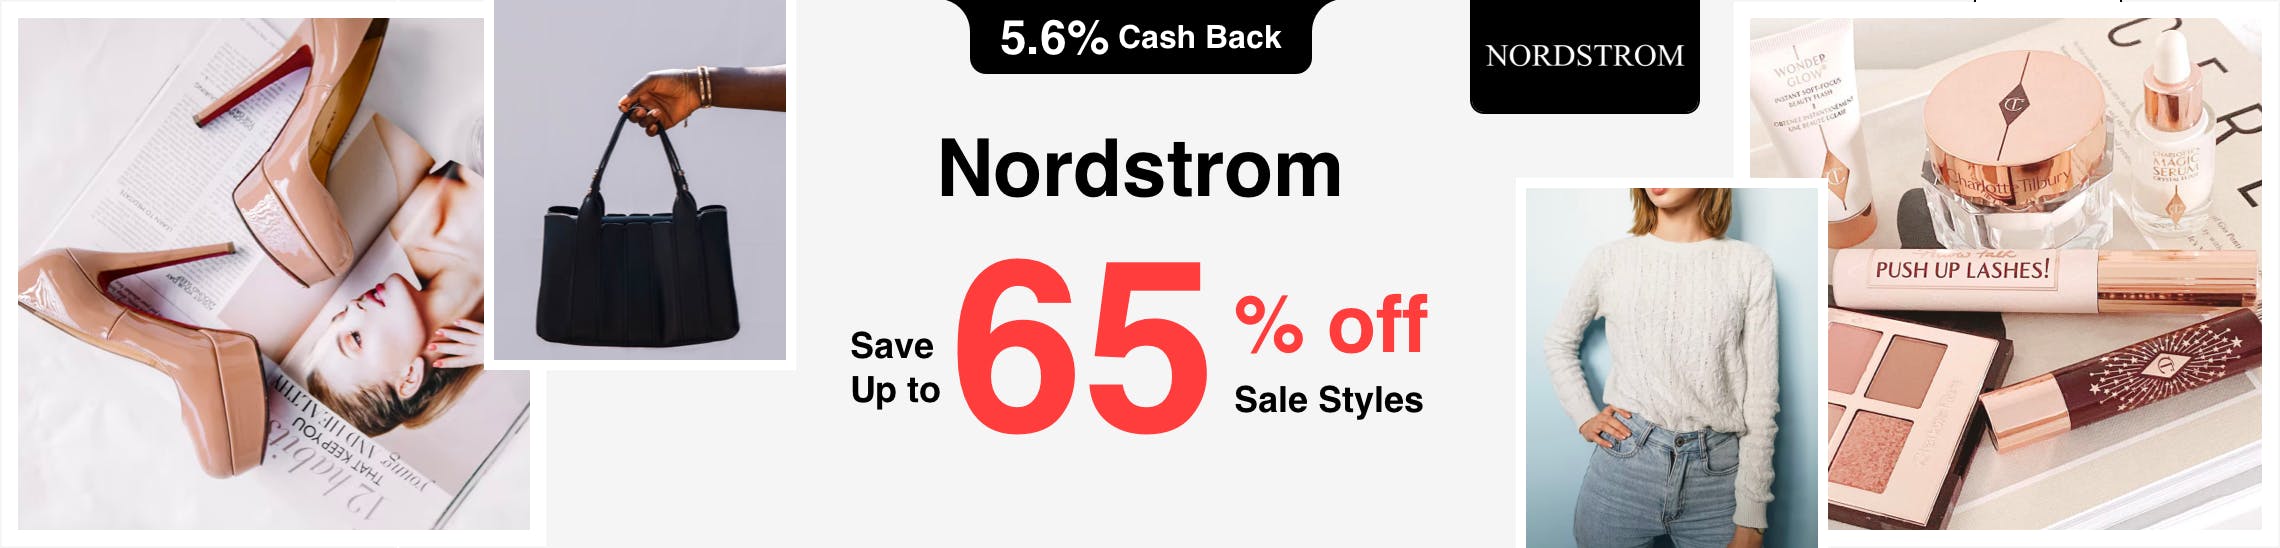 Nordstrom Promo Codes & Cash Back